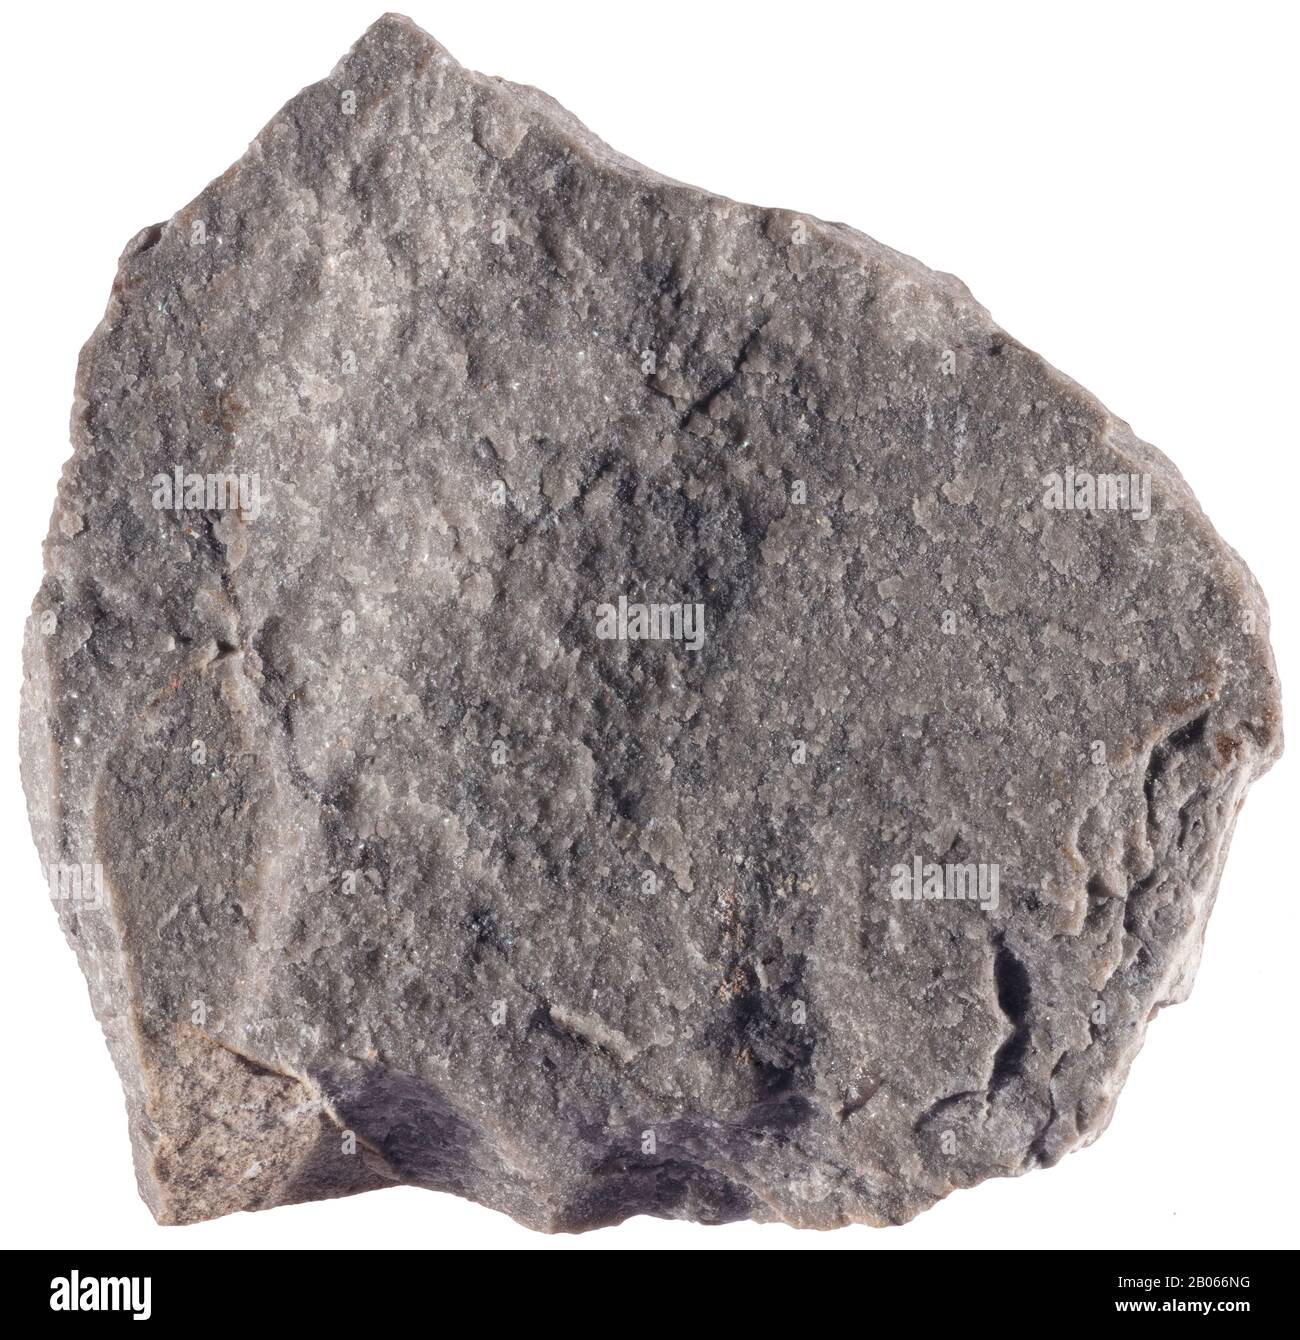 Compact Limestone, Carbonate, Italy la piedra caliza compacta consiste en carbonato de cal puro o en combinación con arena o arcilla. La piedra caliza es una ca Foto de stock